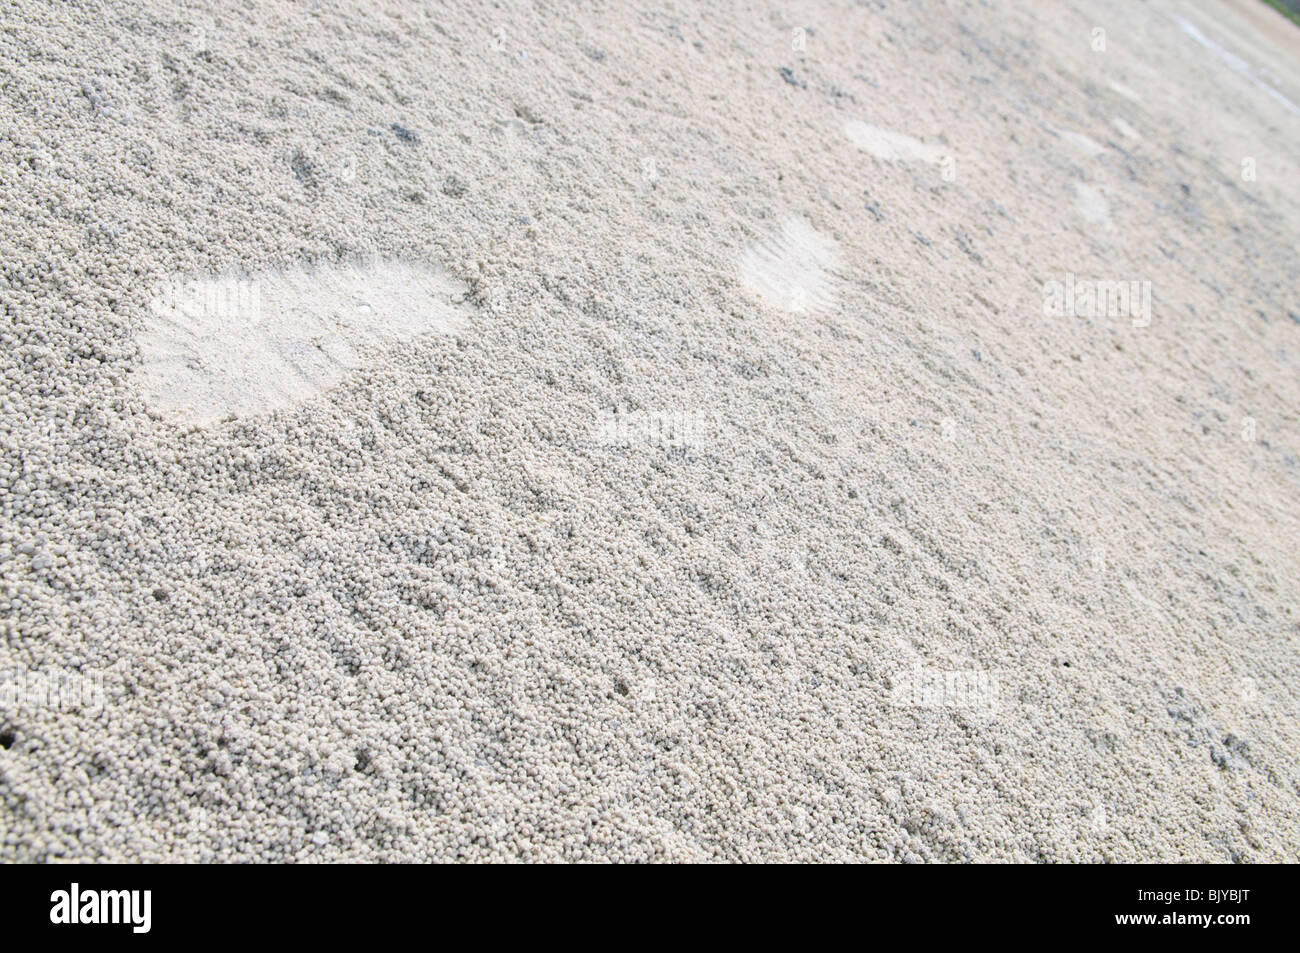 Fußspuren im weißen Sand Kugeln von Krabben Stockfoto